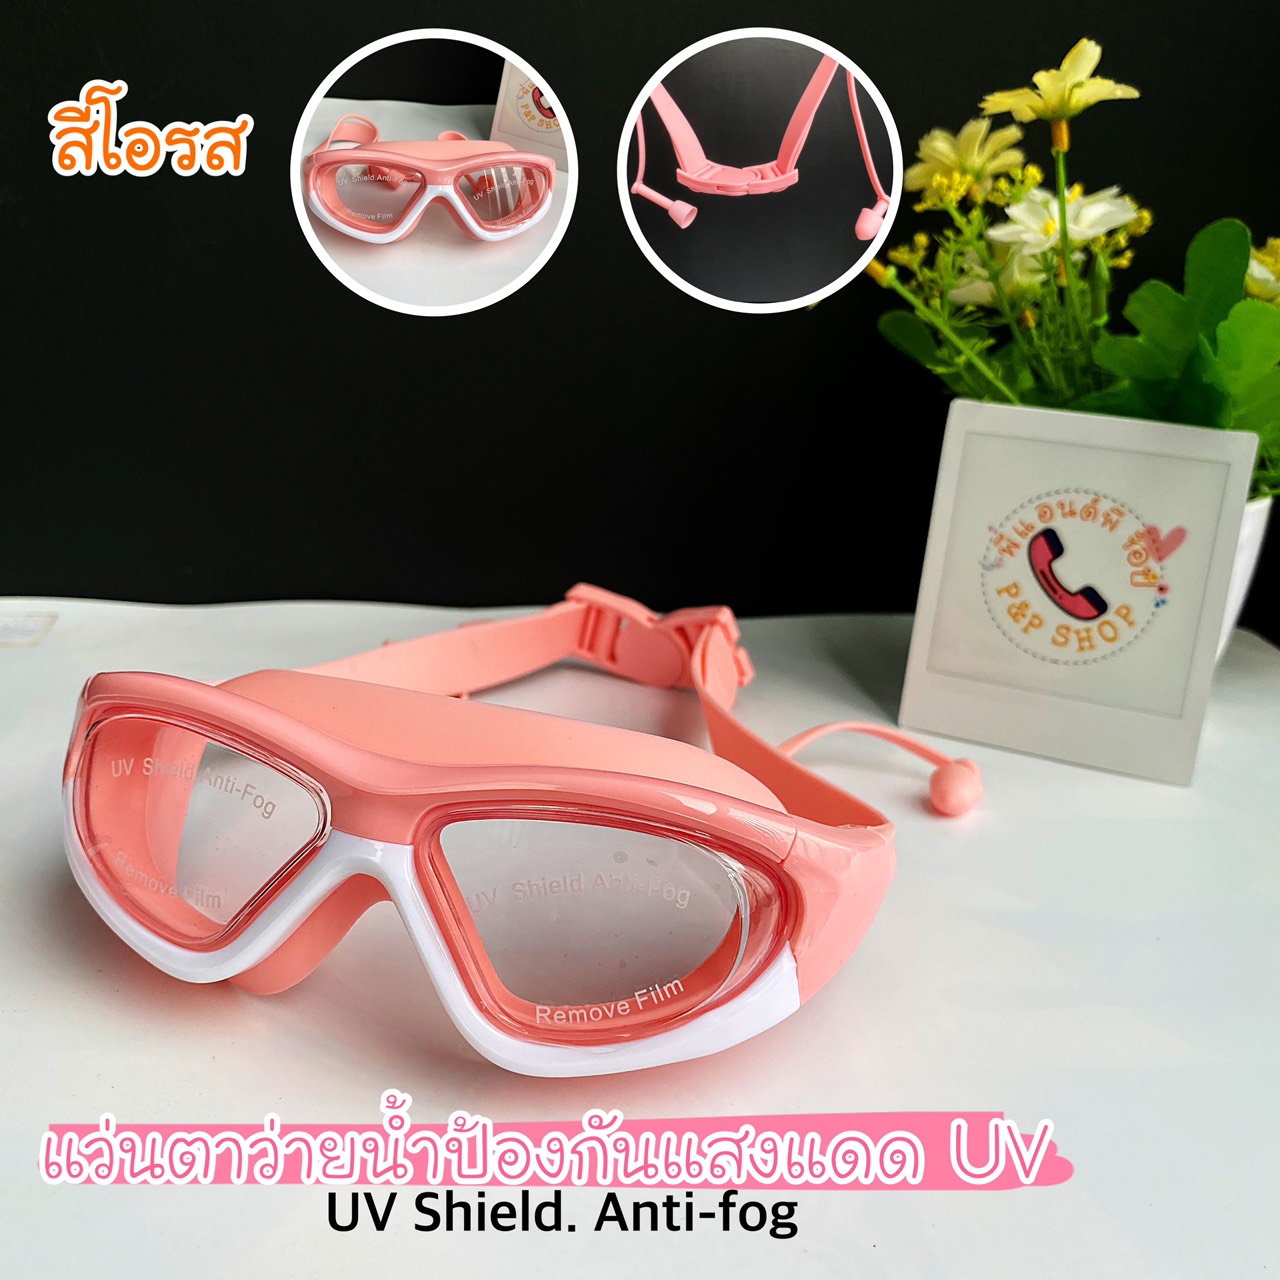 ลองดูภาพสินค้า แว่นตาว่ายน้ำเด็กสีสันสดใส ช่วยป้องกันแสงแดด UV  ไม่เป็นฝ้าที่หน้ากระจก สายรัดปรับระดับได้ พร้อมที่อุดหู